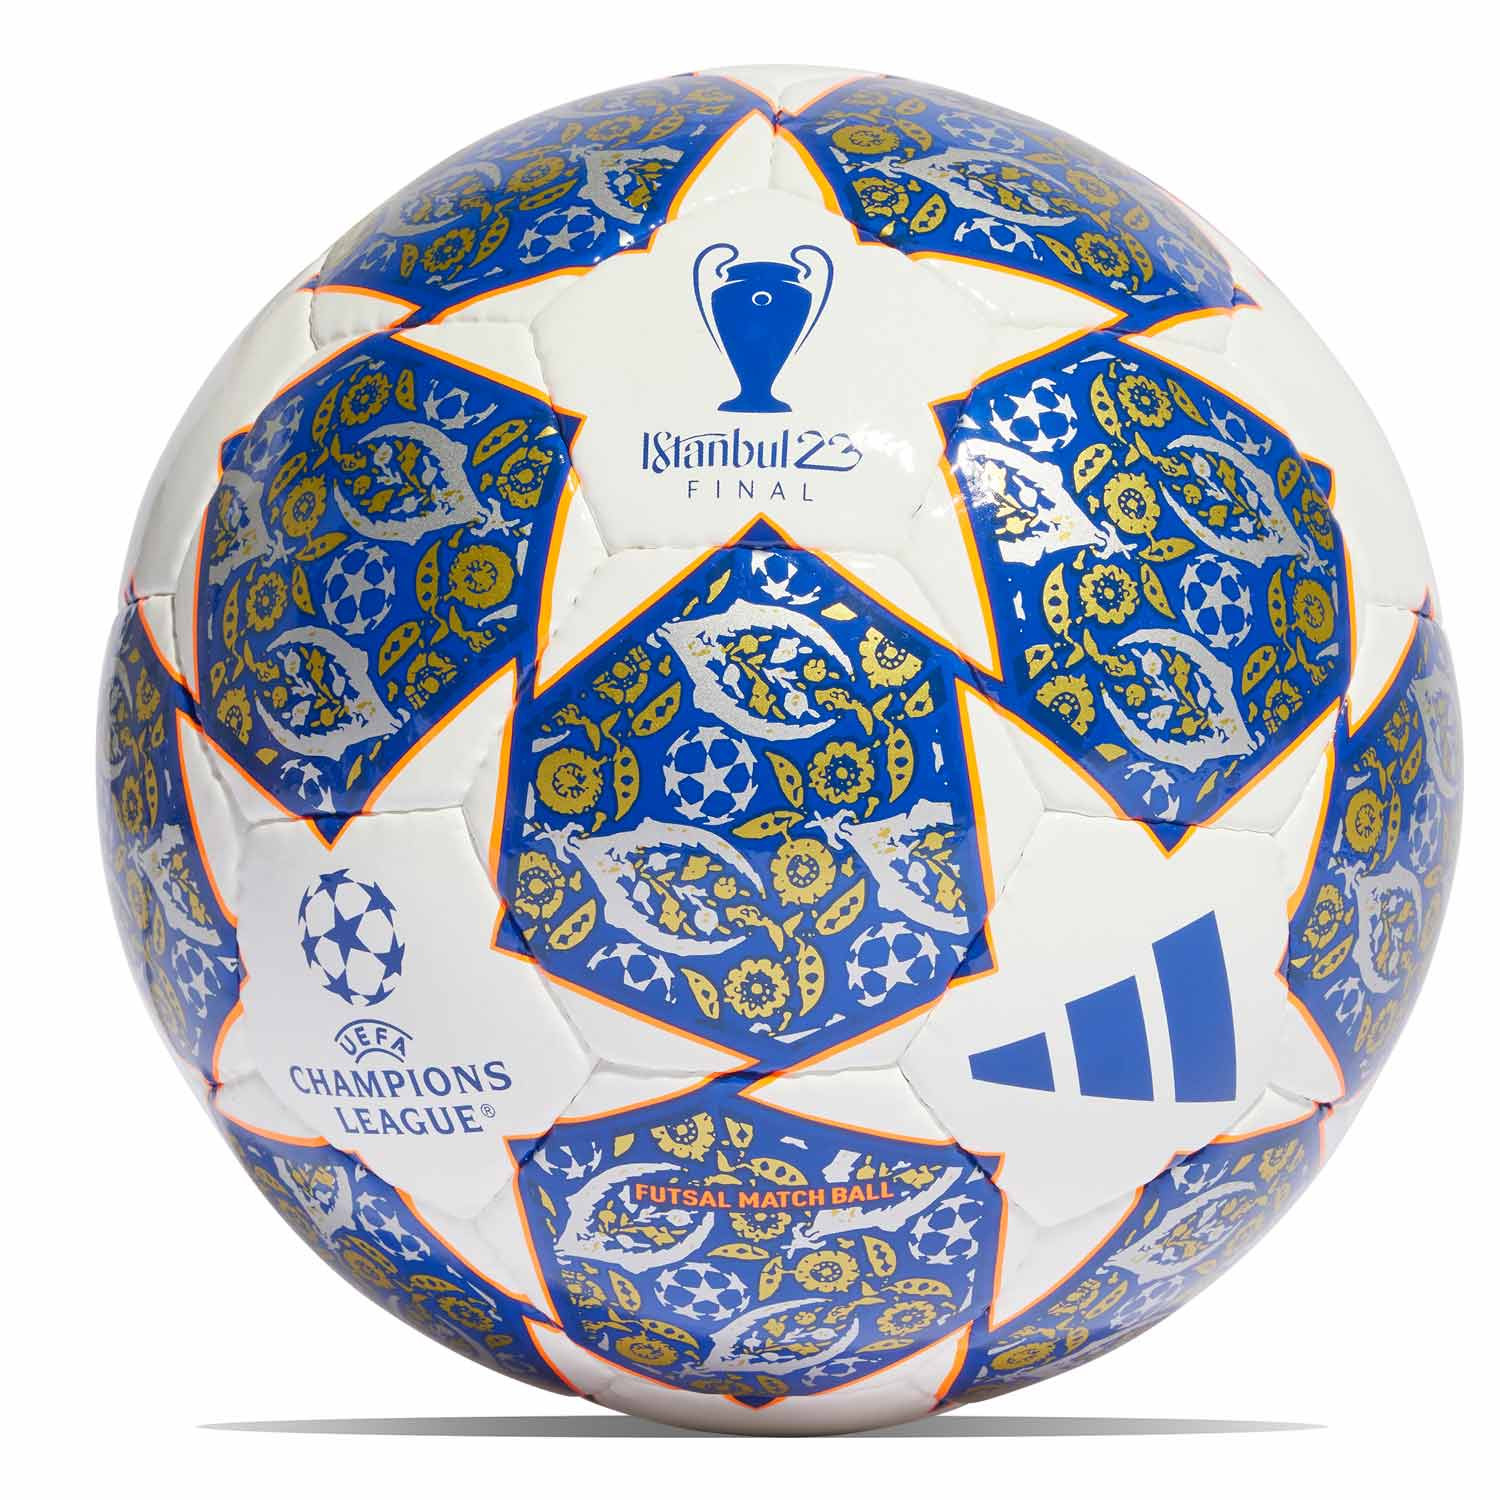 Balón UCL Estambul talla 62 cm azul |